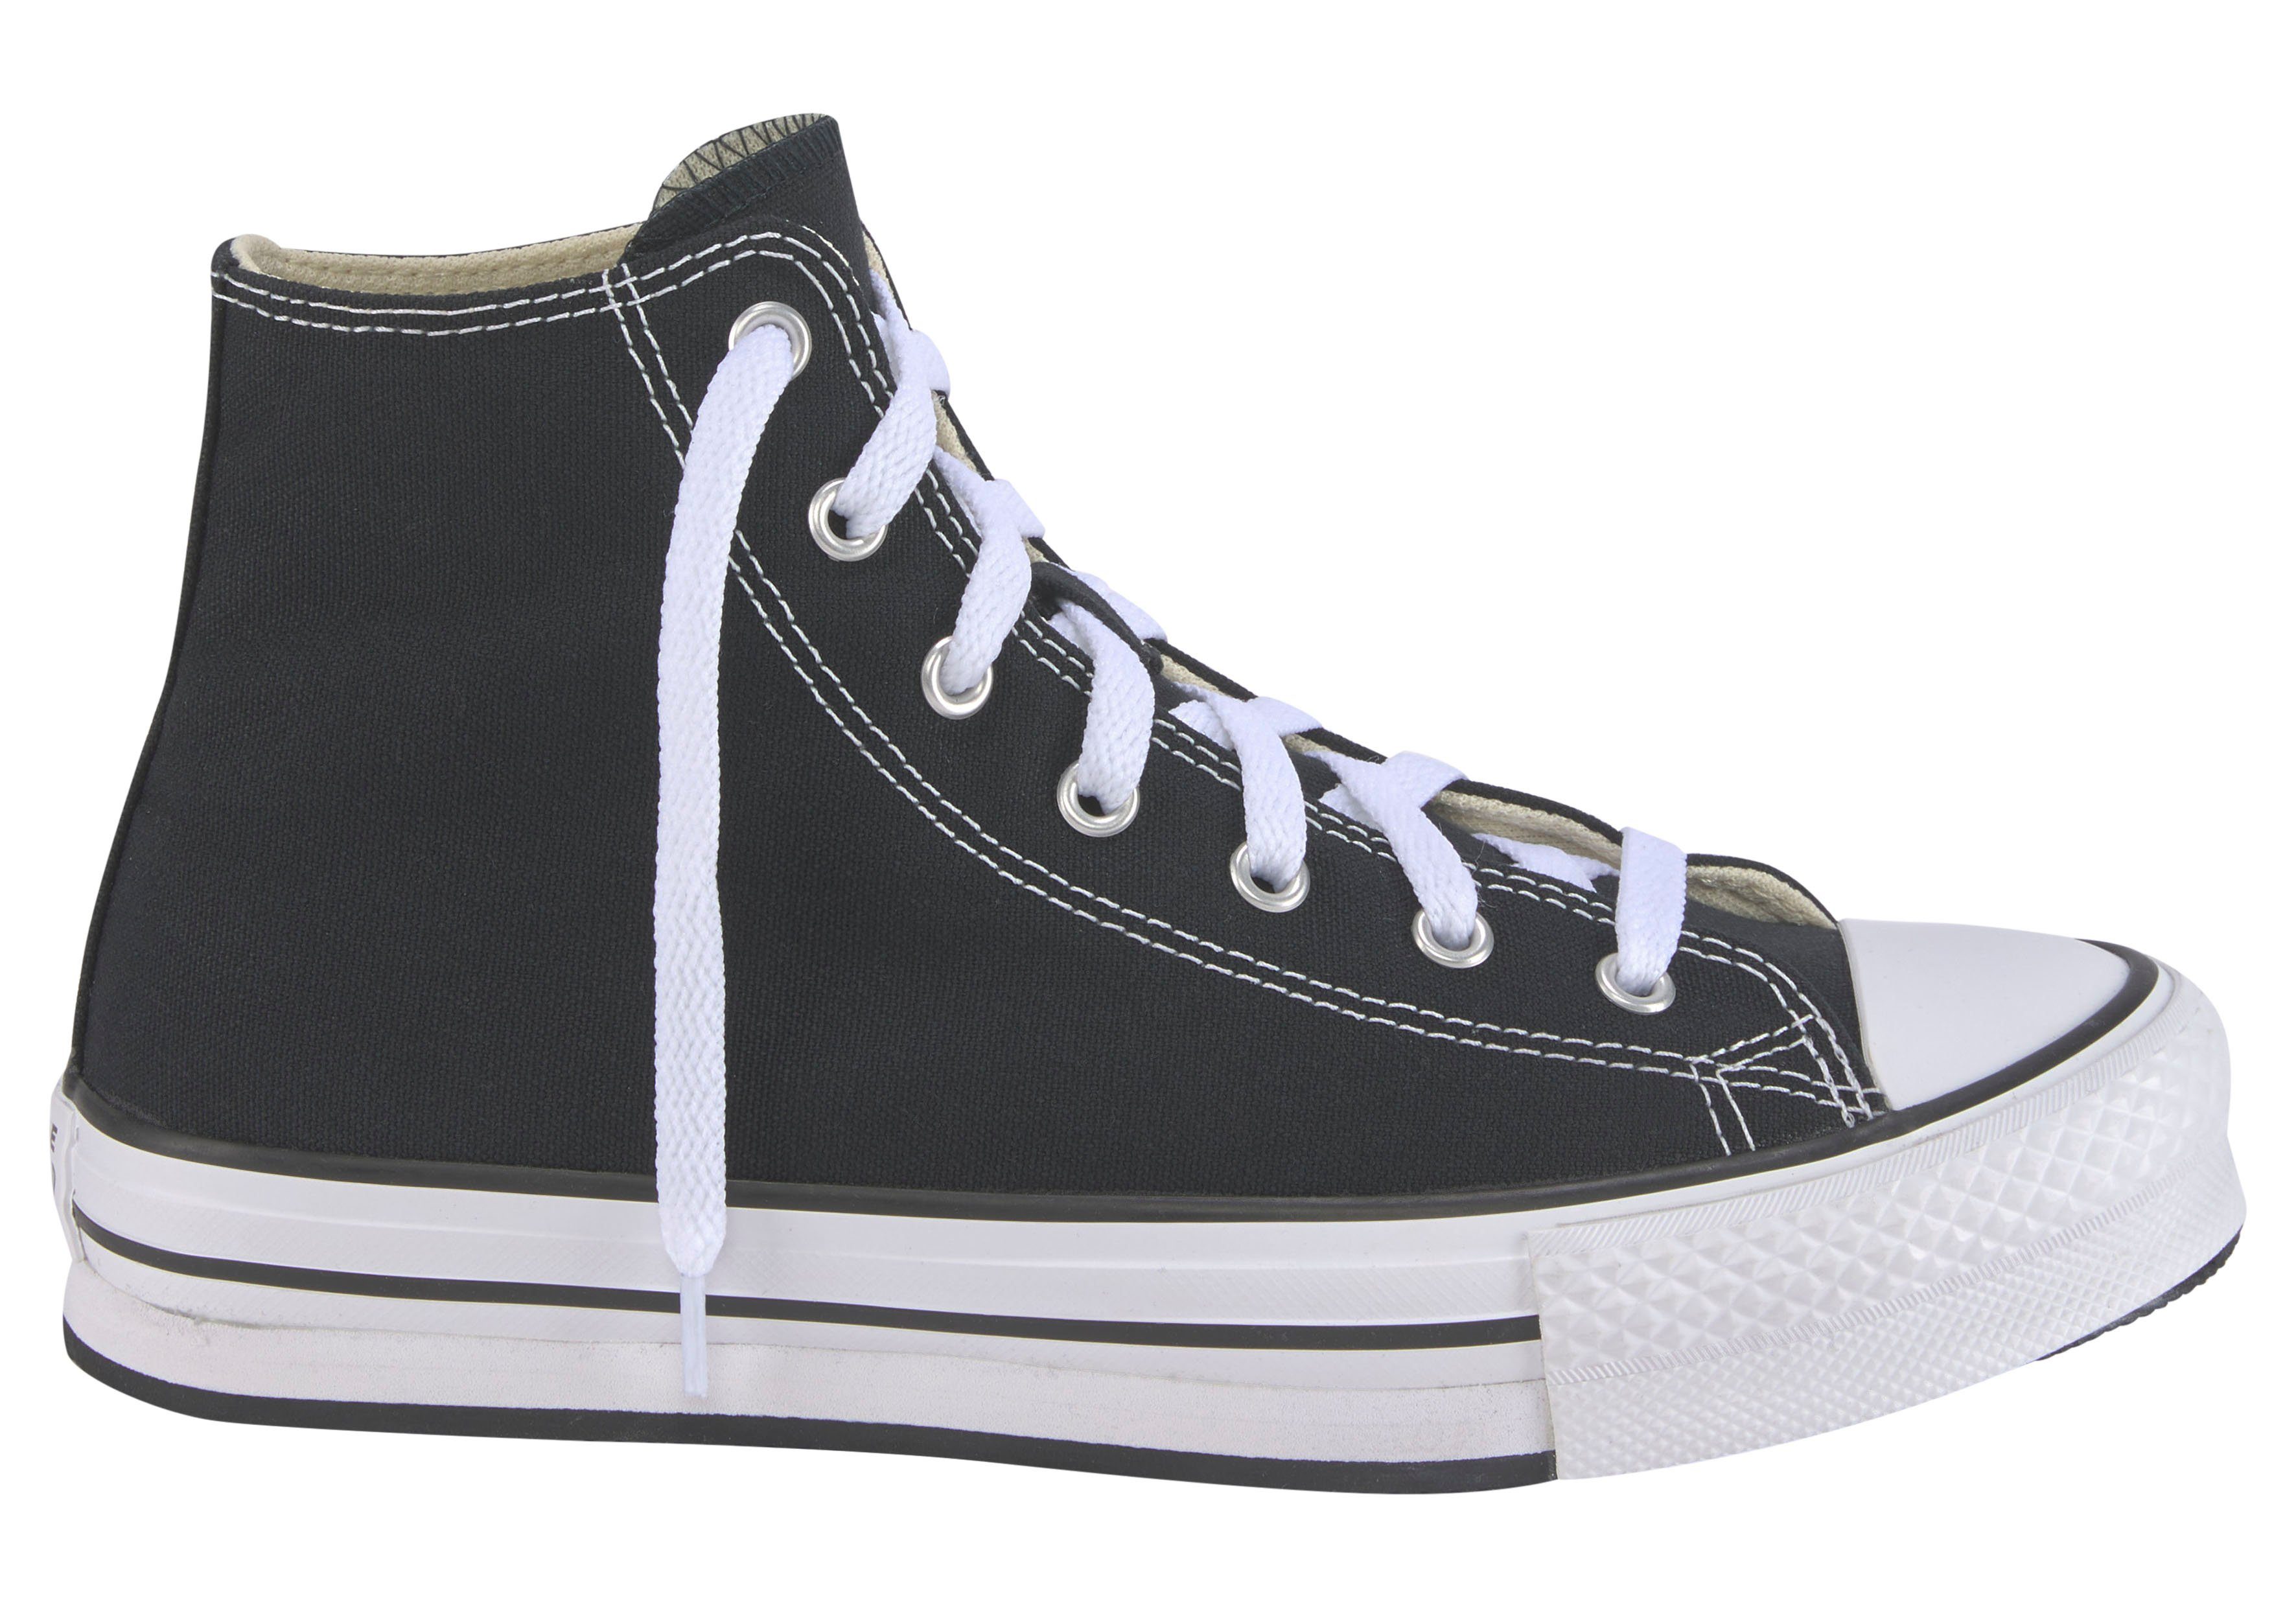 EVA TAYLOR CANV LIFT CHUCK ALL STAR Sneaker schwarz-weiß Converse